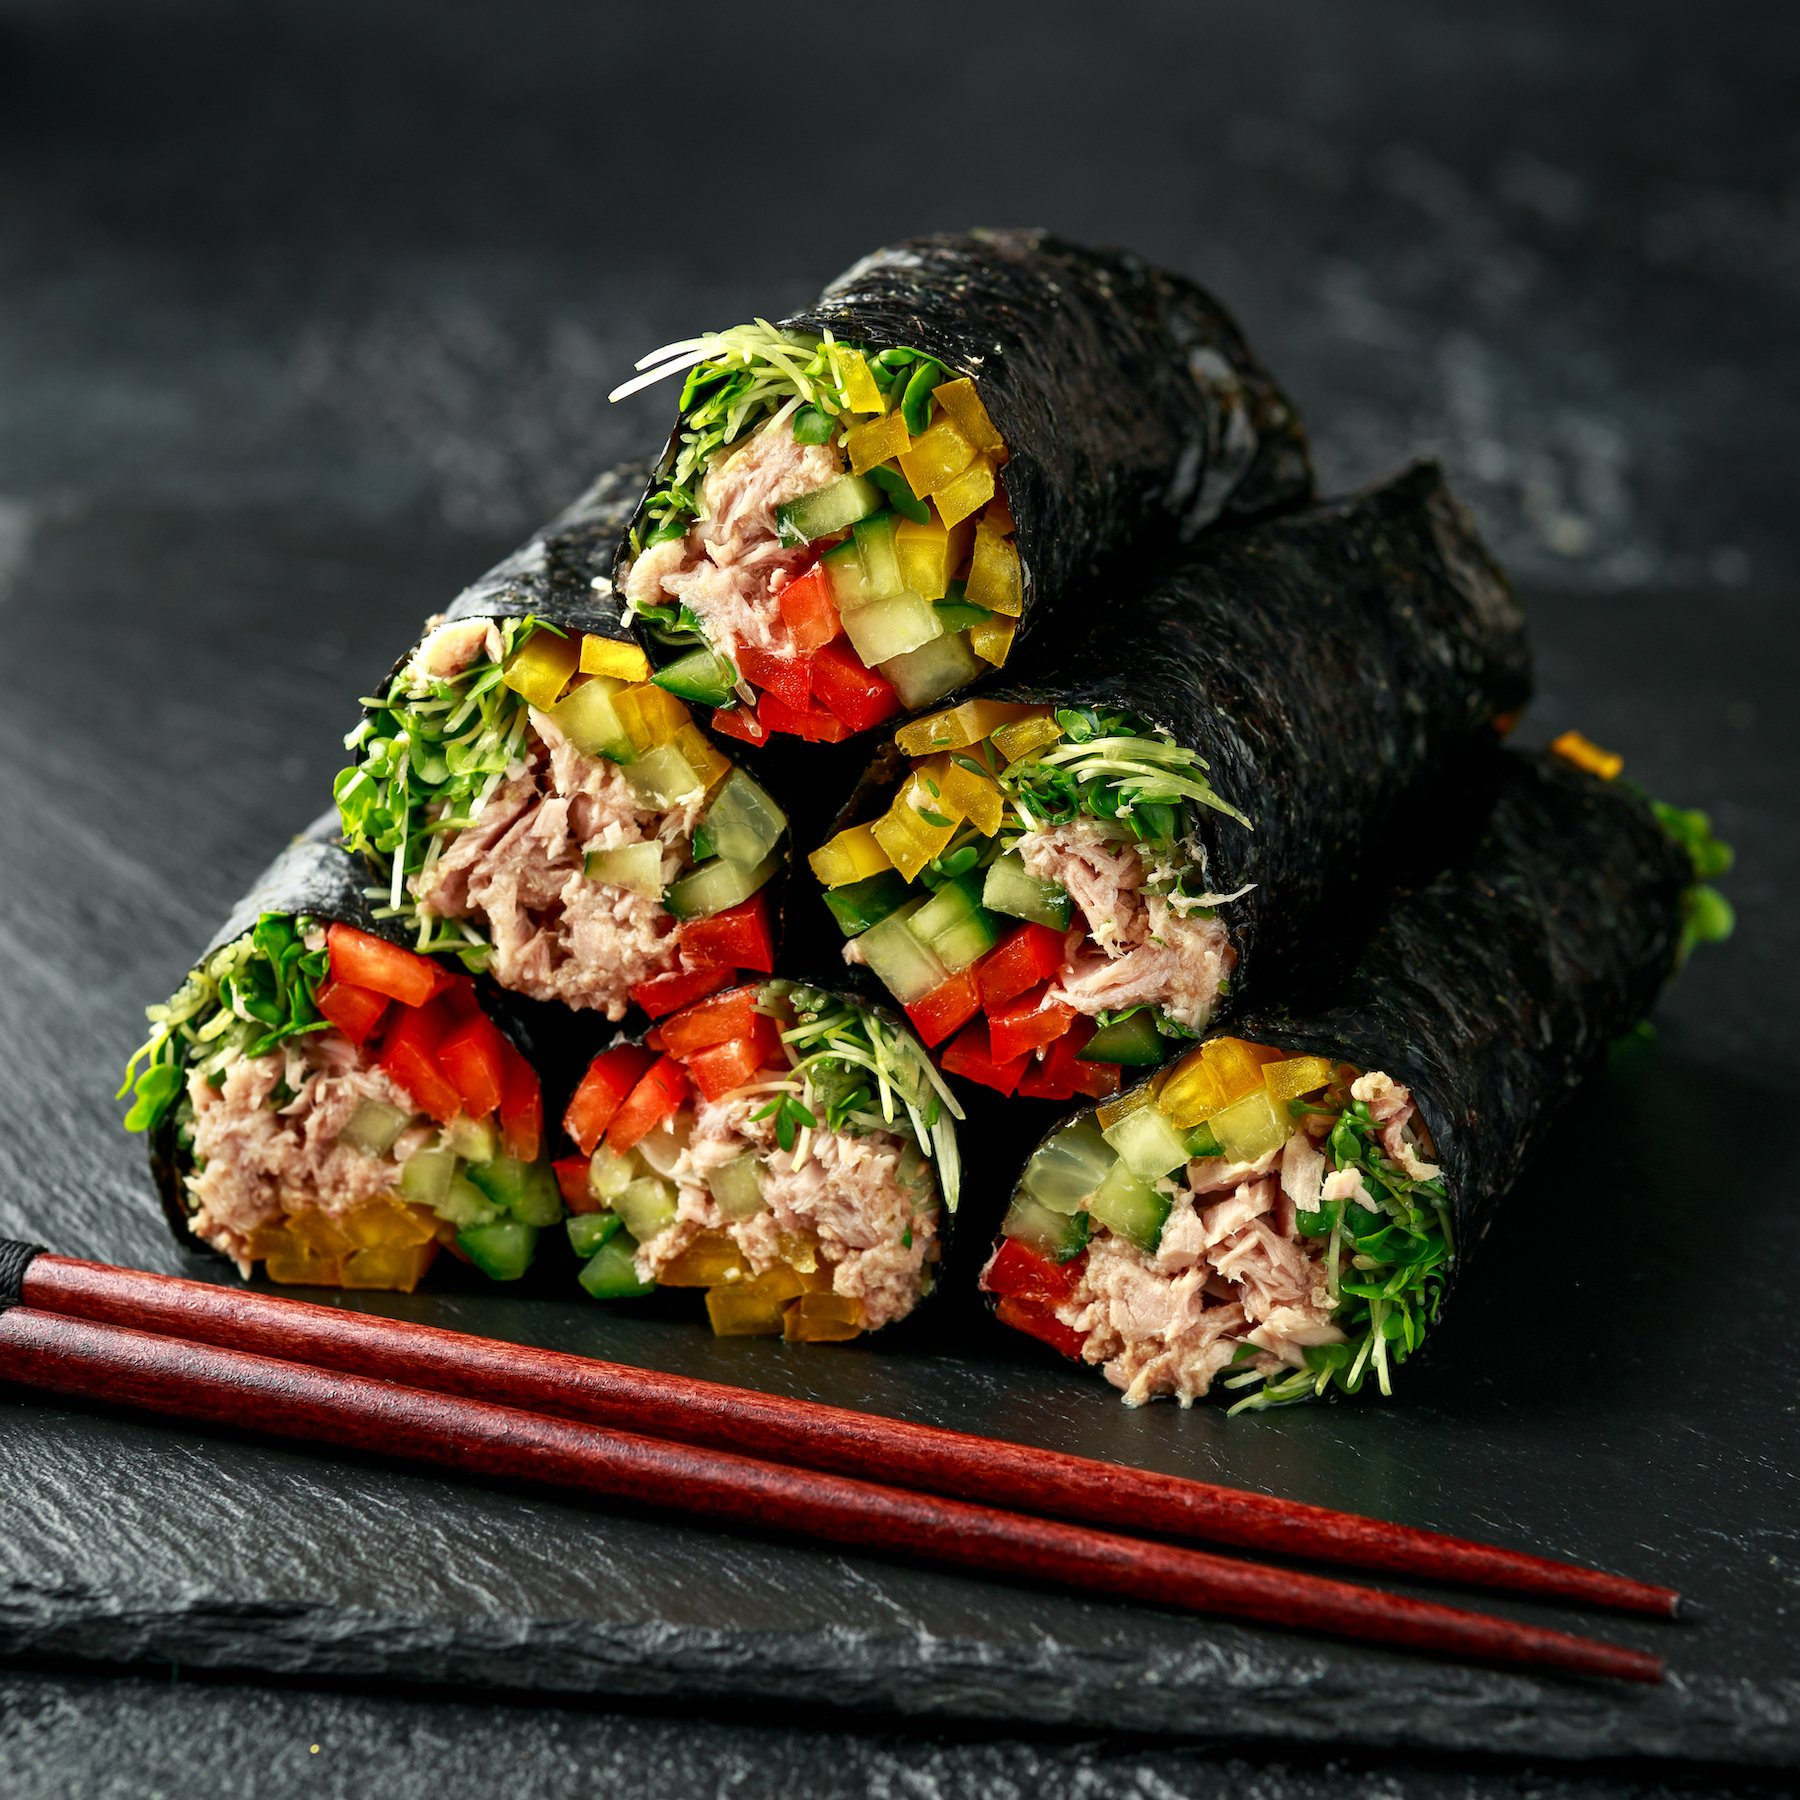 Tuna sushi nori rolls